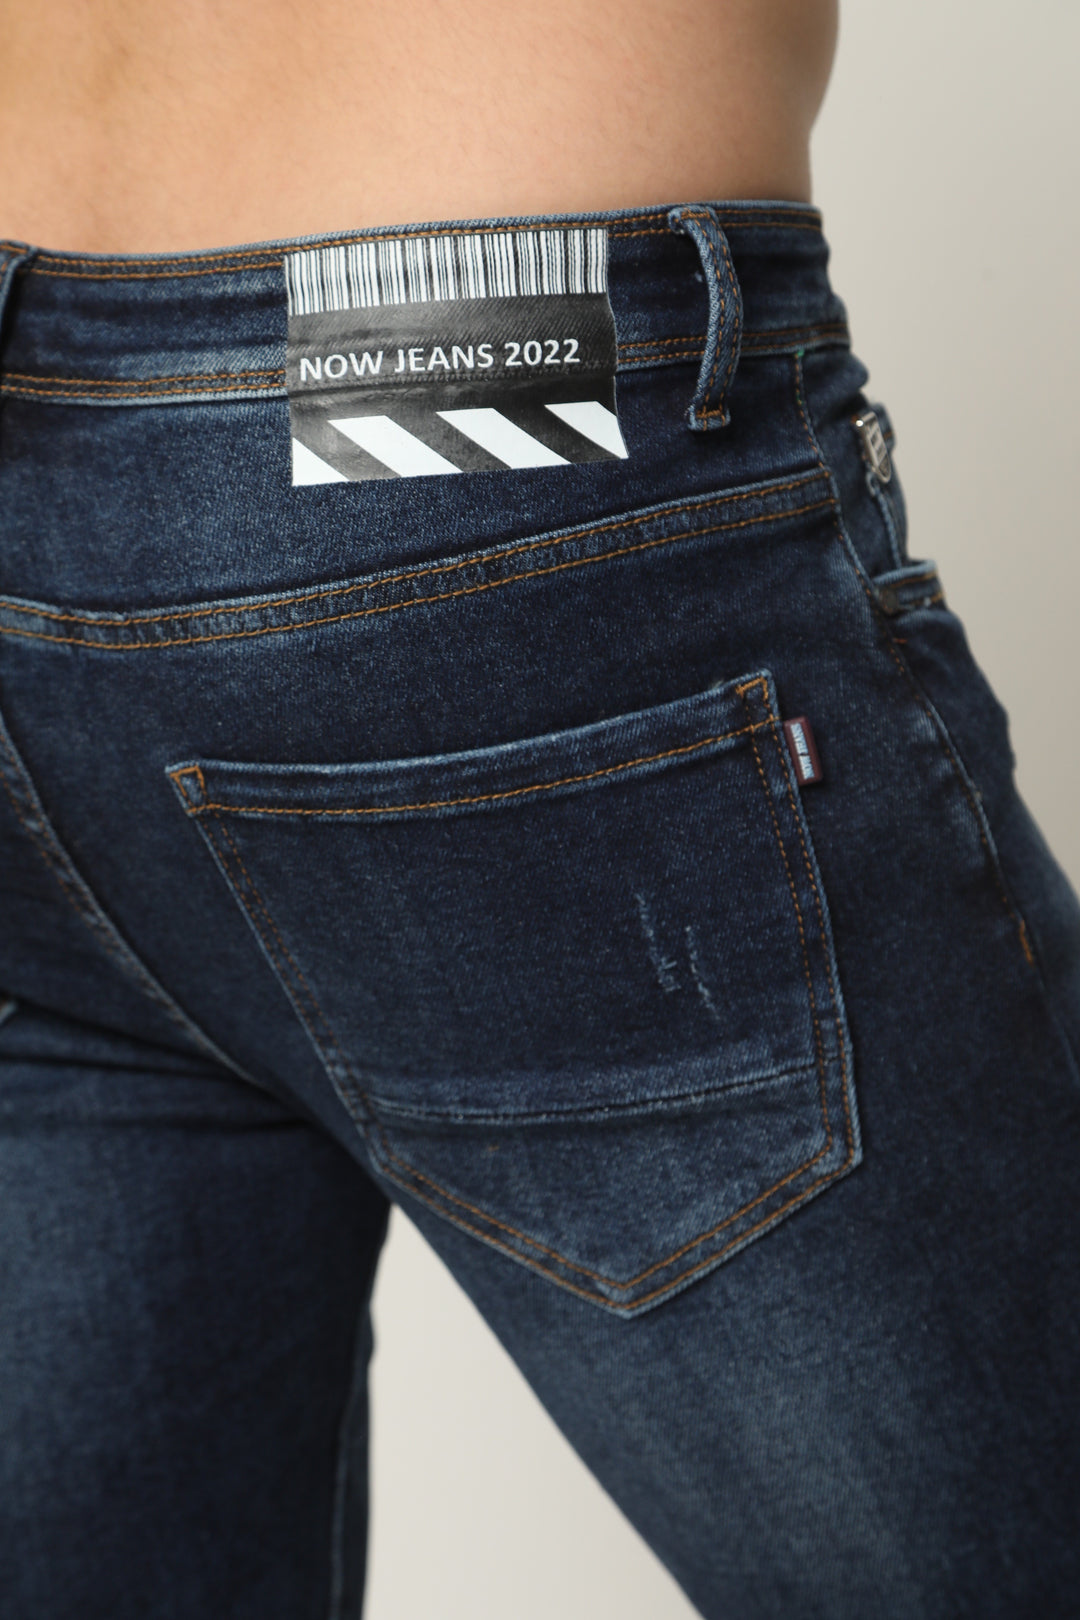 946 ג'ינס סופר סקיני - canavaro jeans